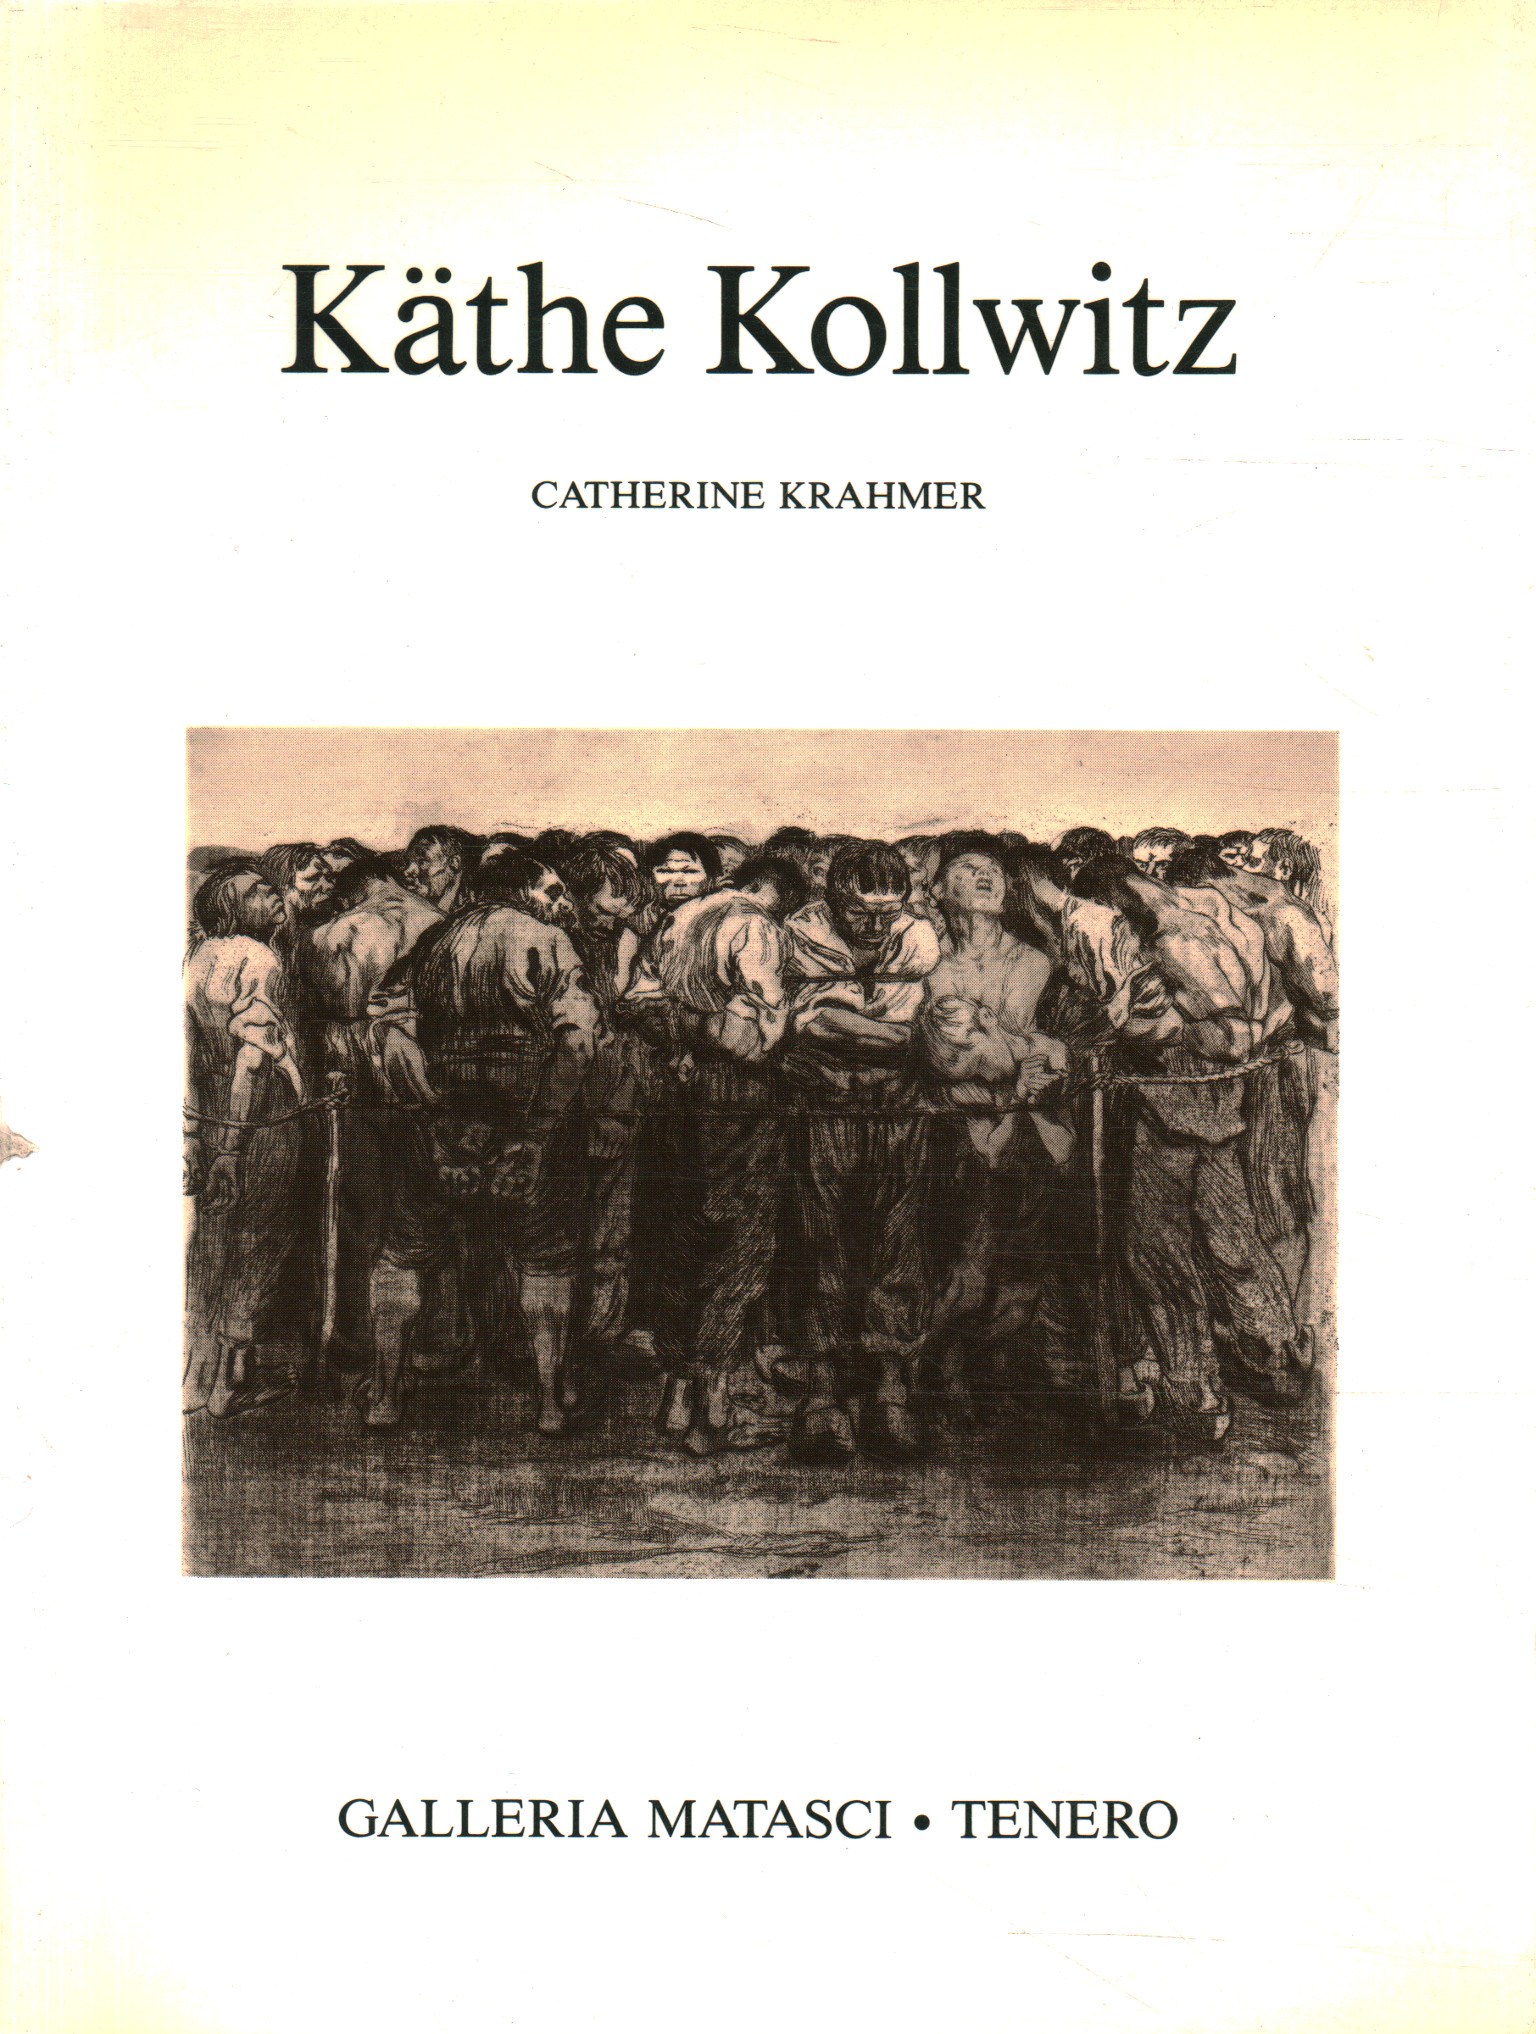 Käthe Kollwitz 1867 - 1945